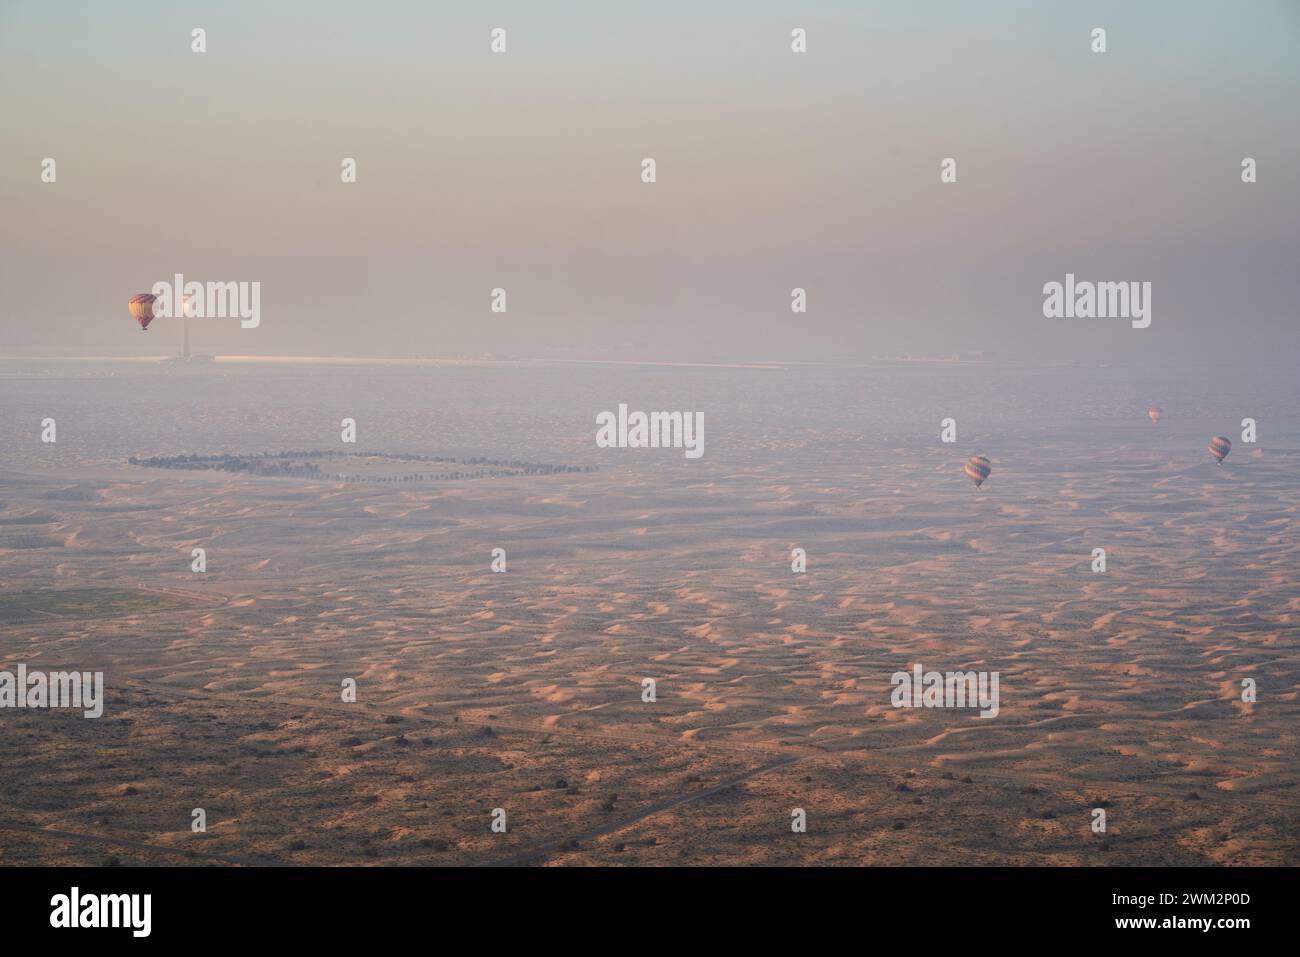 Globos aerostáticos sobre el parque solar Mohammed bin Rashid Al Maktoum, Dubai, Emiratos Árabes Unidos. Foto de stock